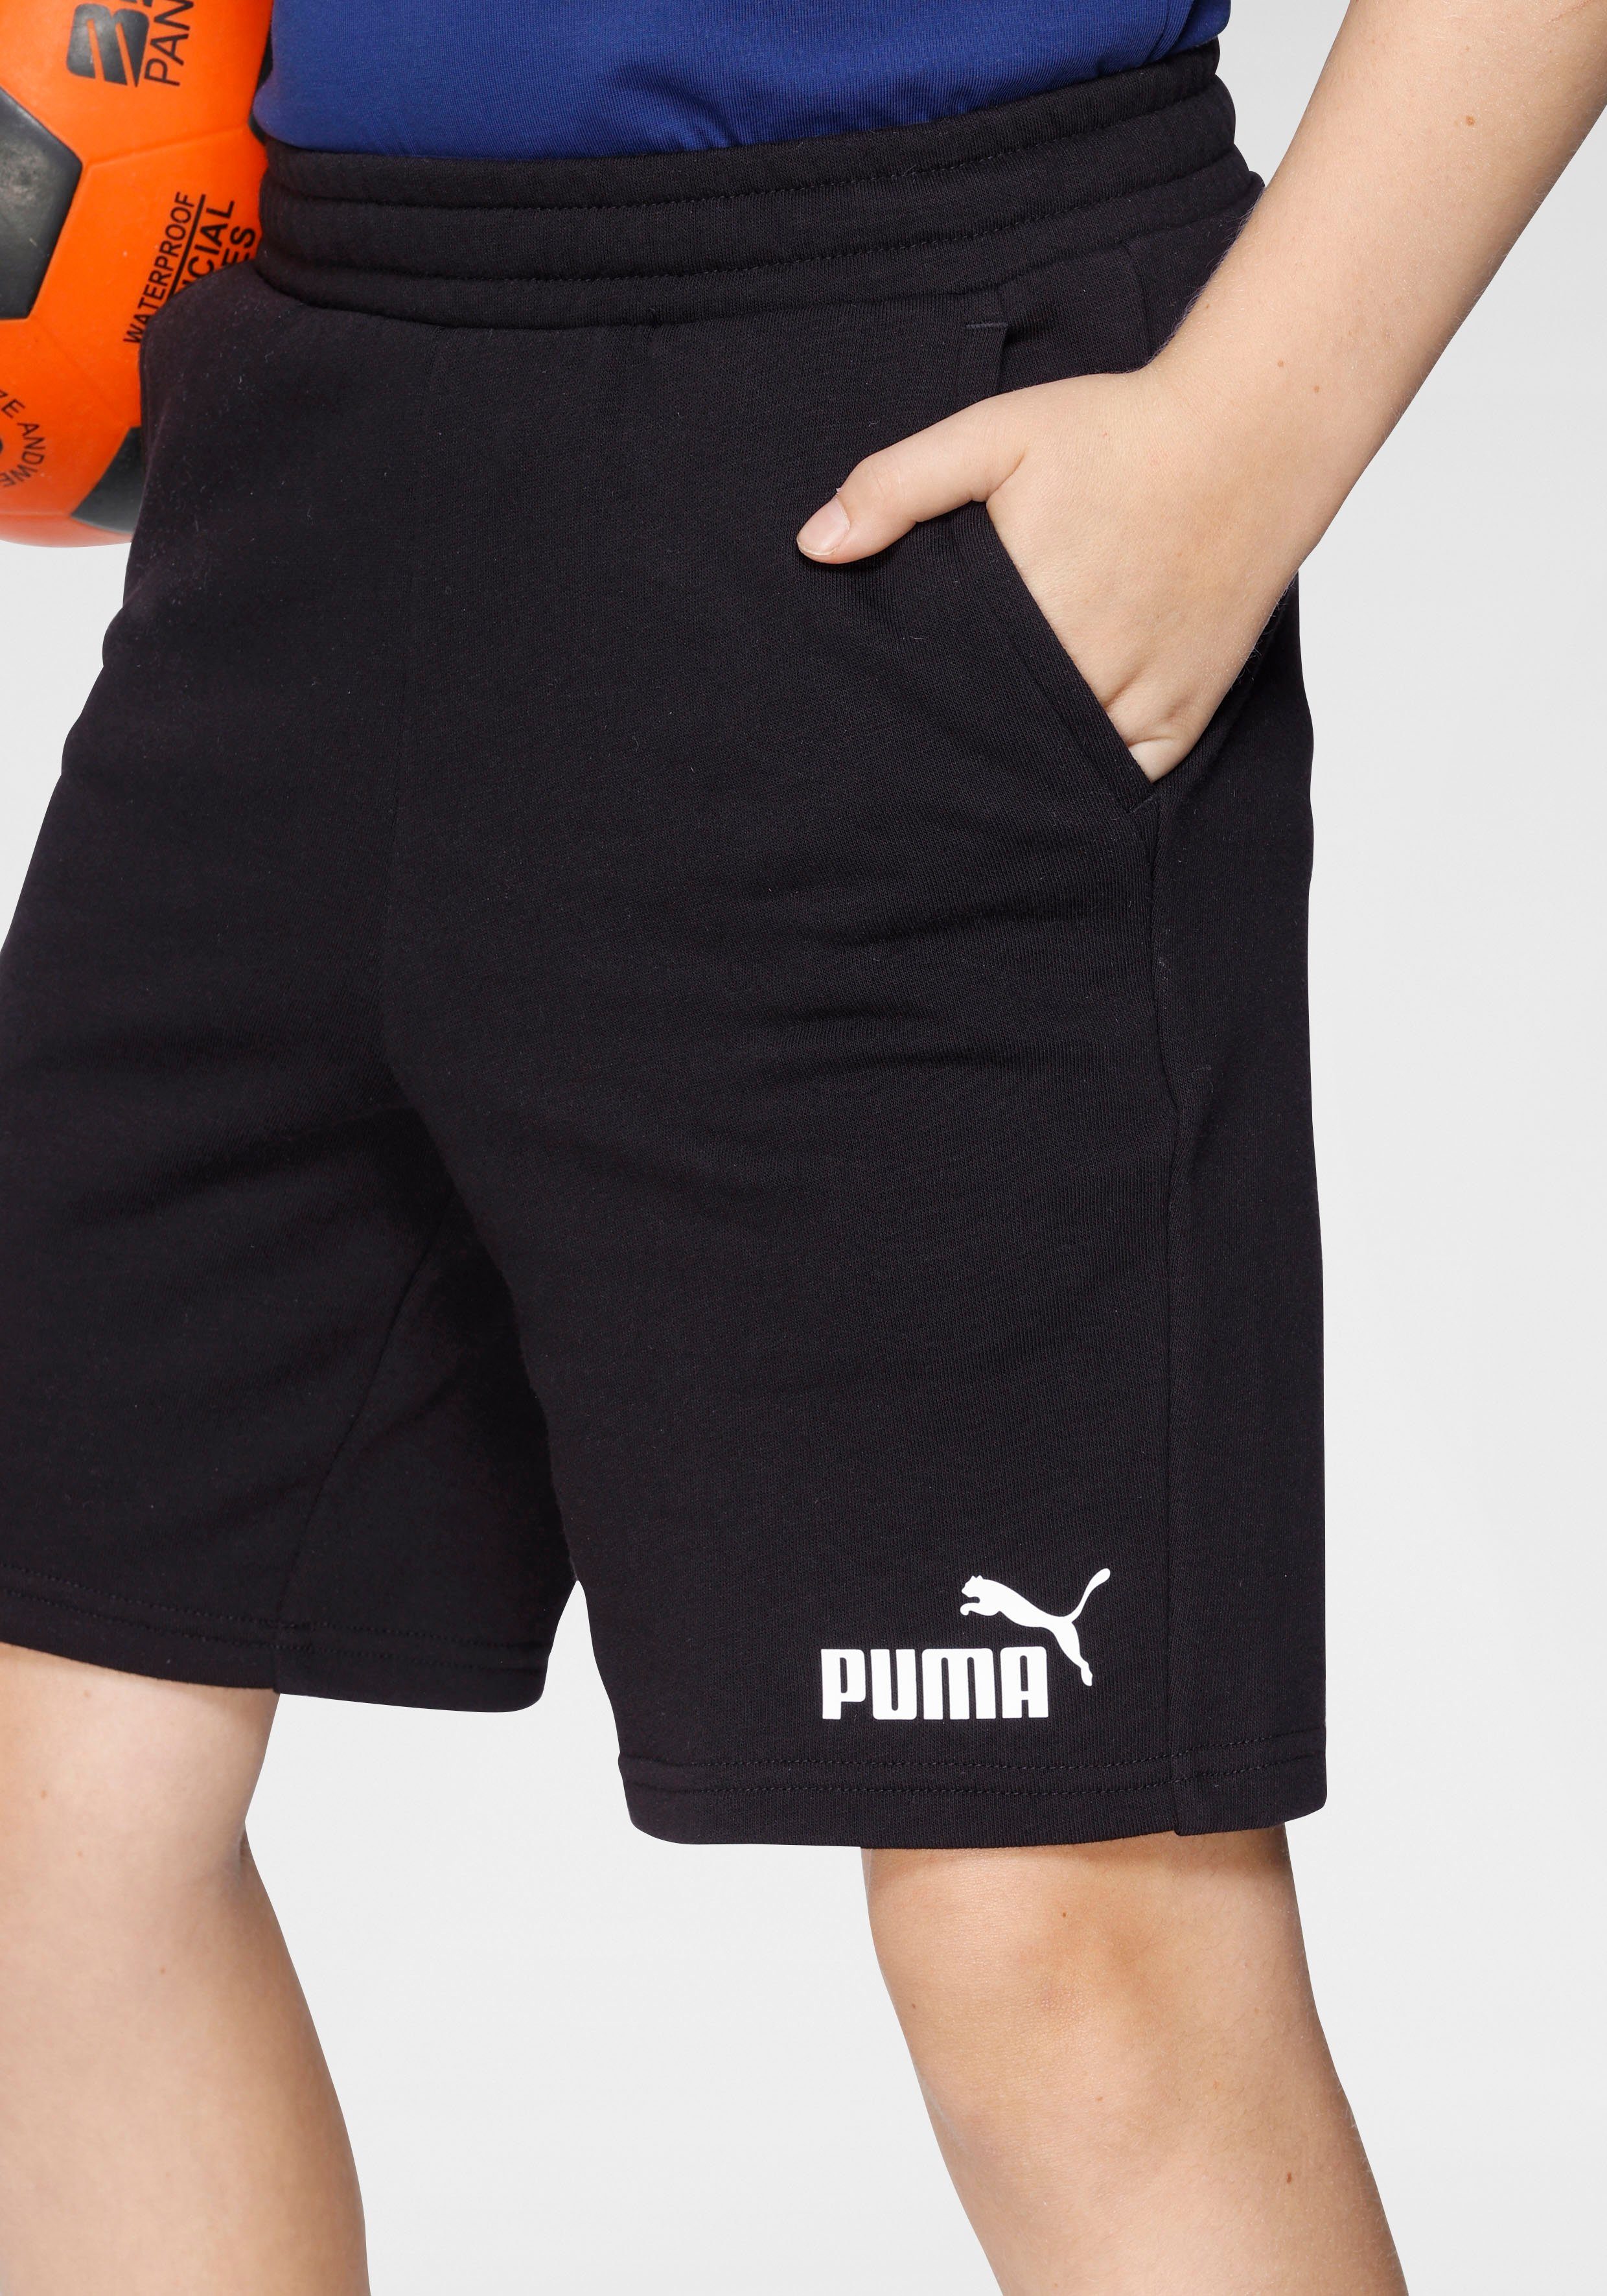 Black Shorts PUMA SHORTS Puma SWEAT ESS B